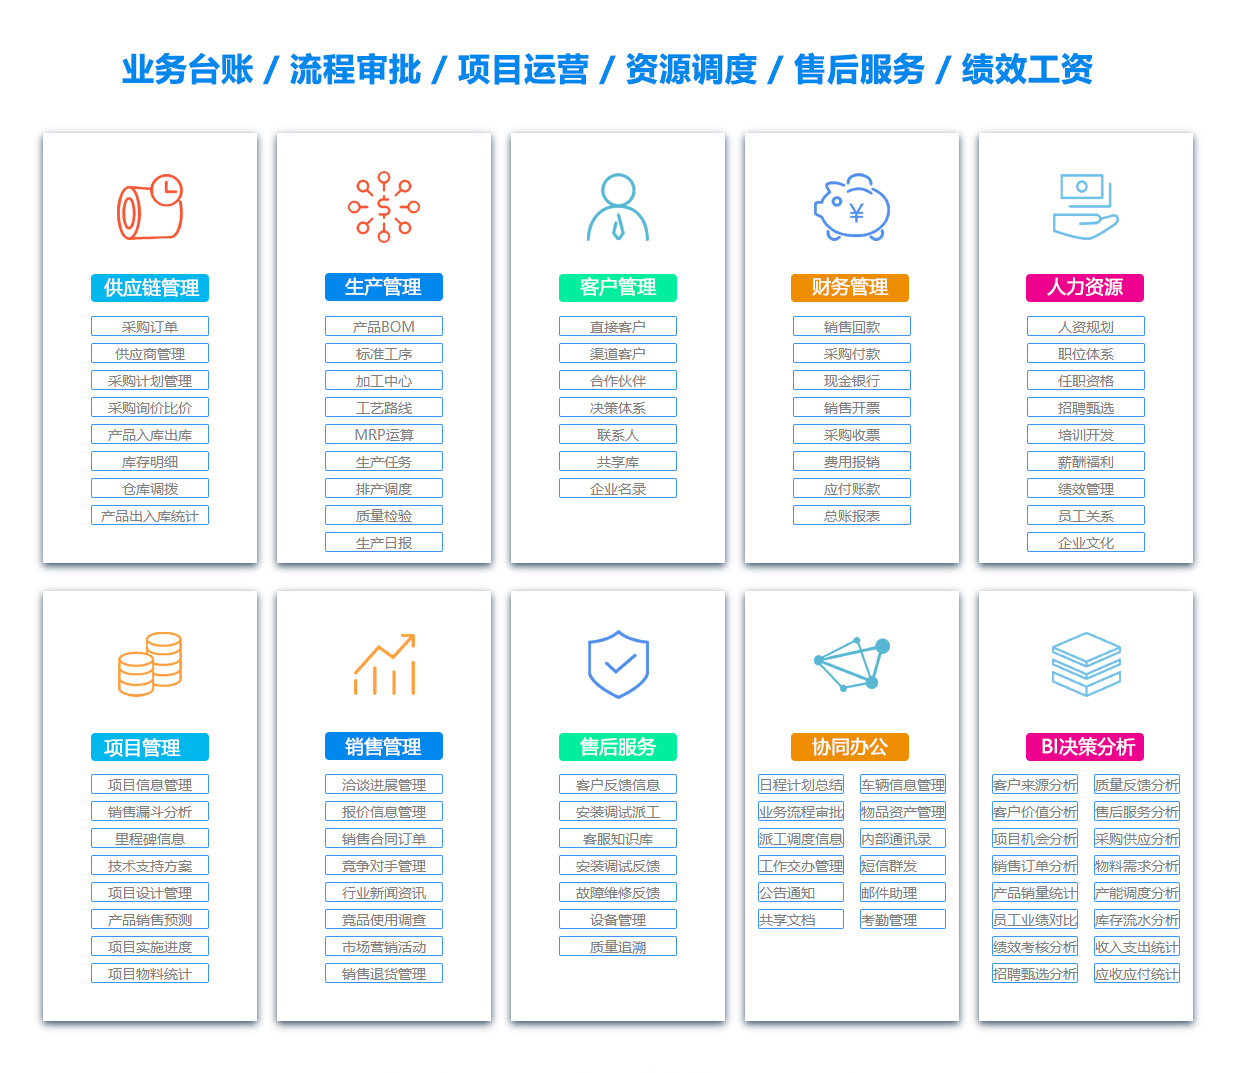 上海客户资料管理软件